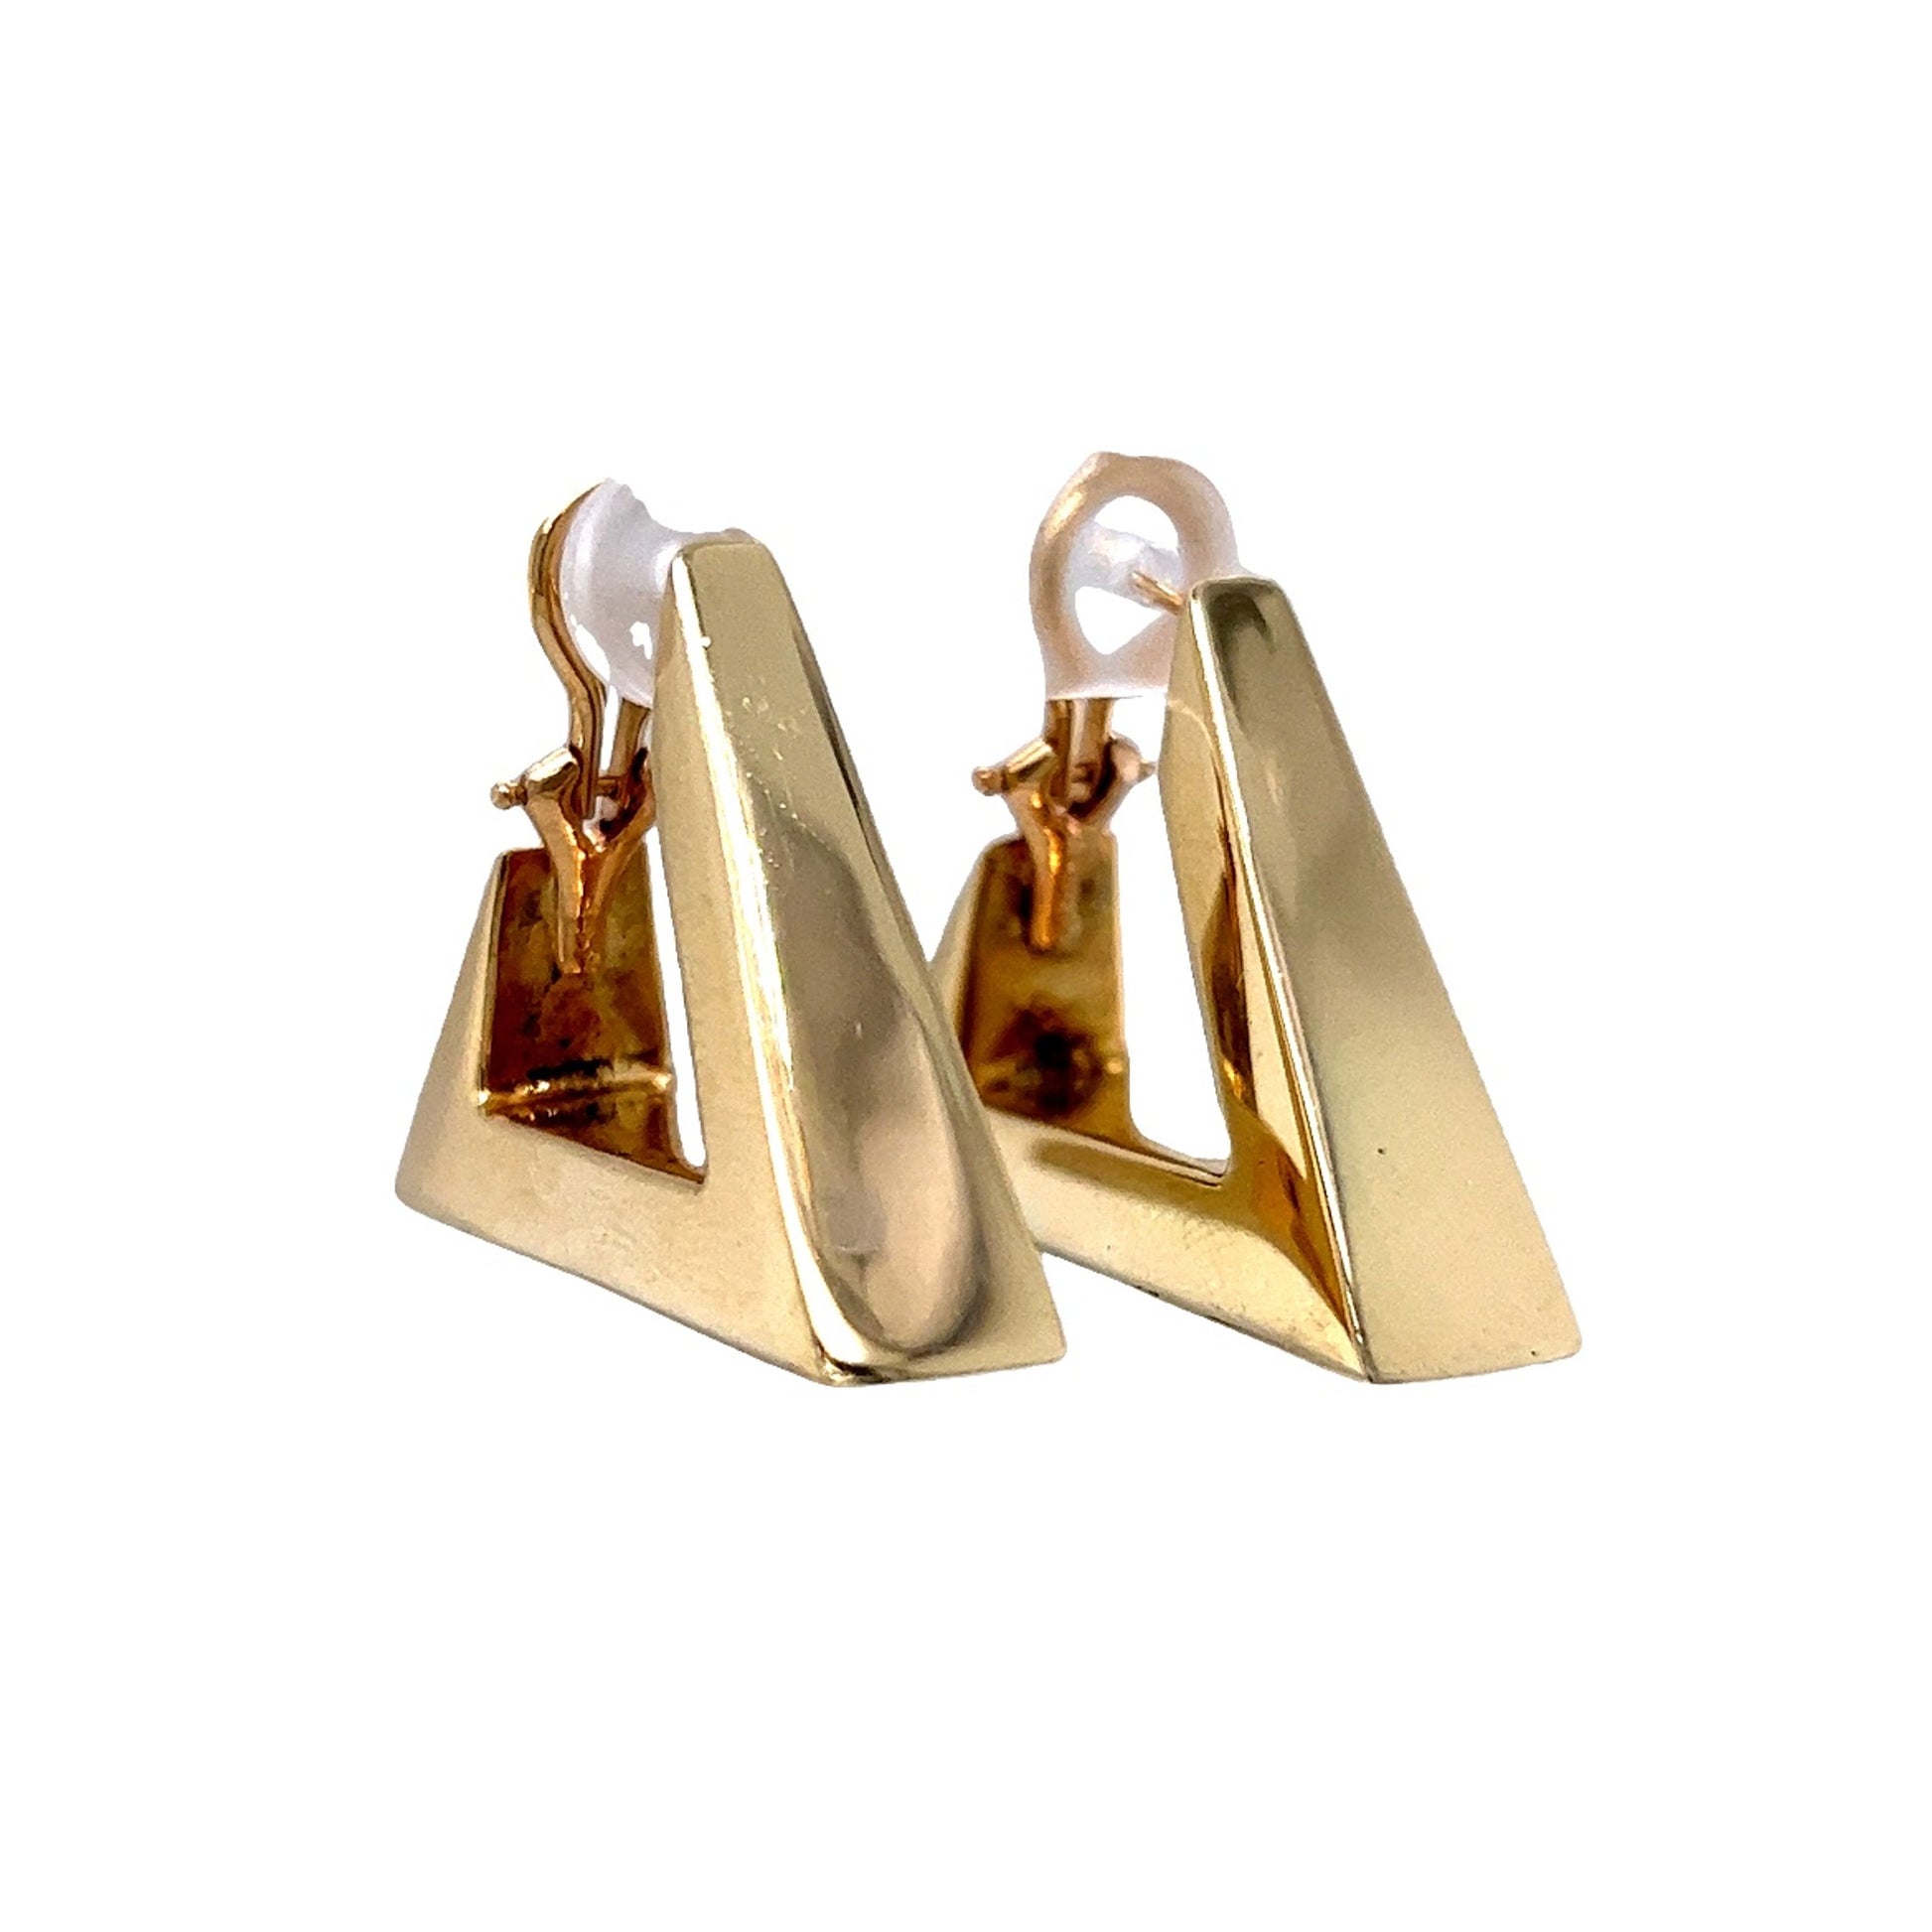 Modern Triangle Earrings in 14k Yellow Gold